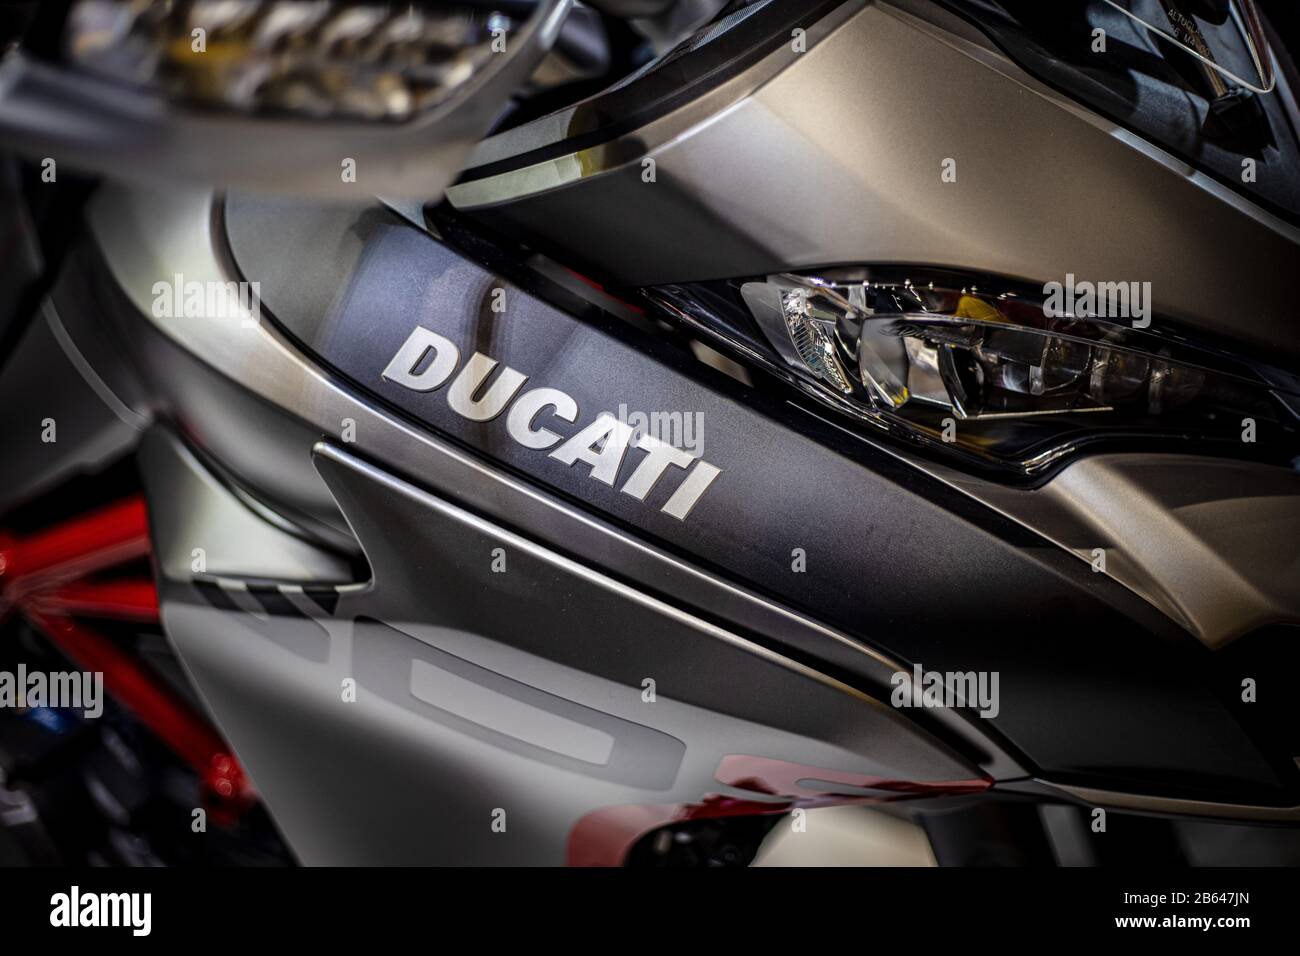 Dettaglio del logo del motociclo. Primo piano del logo Ducati. Foto Stock